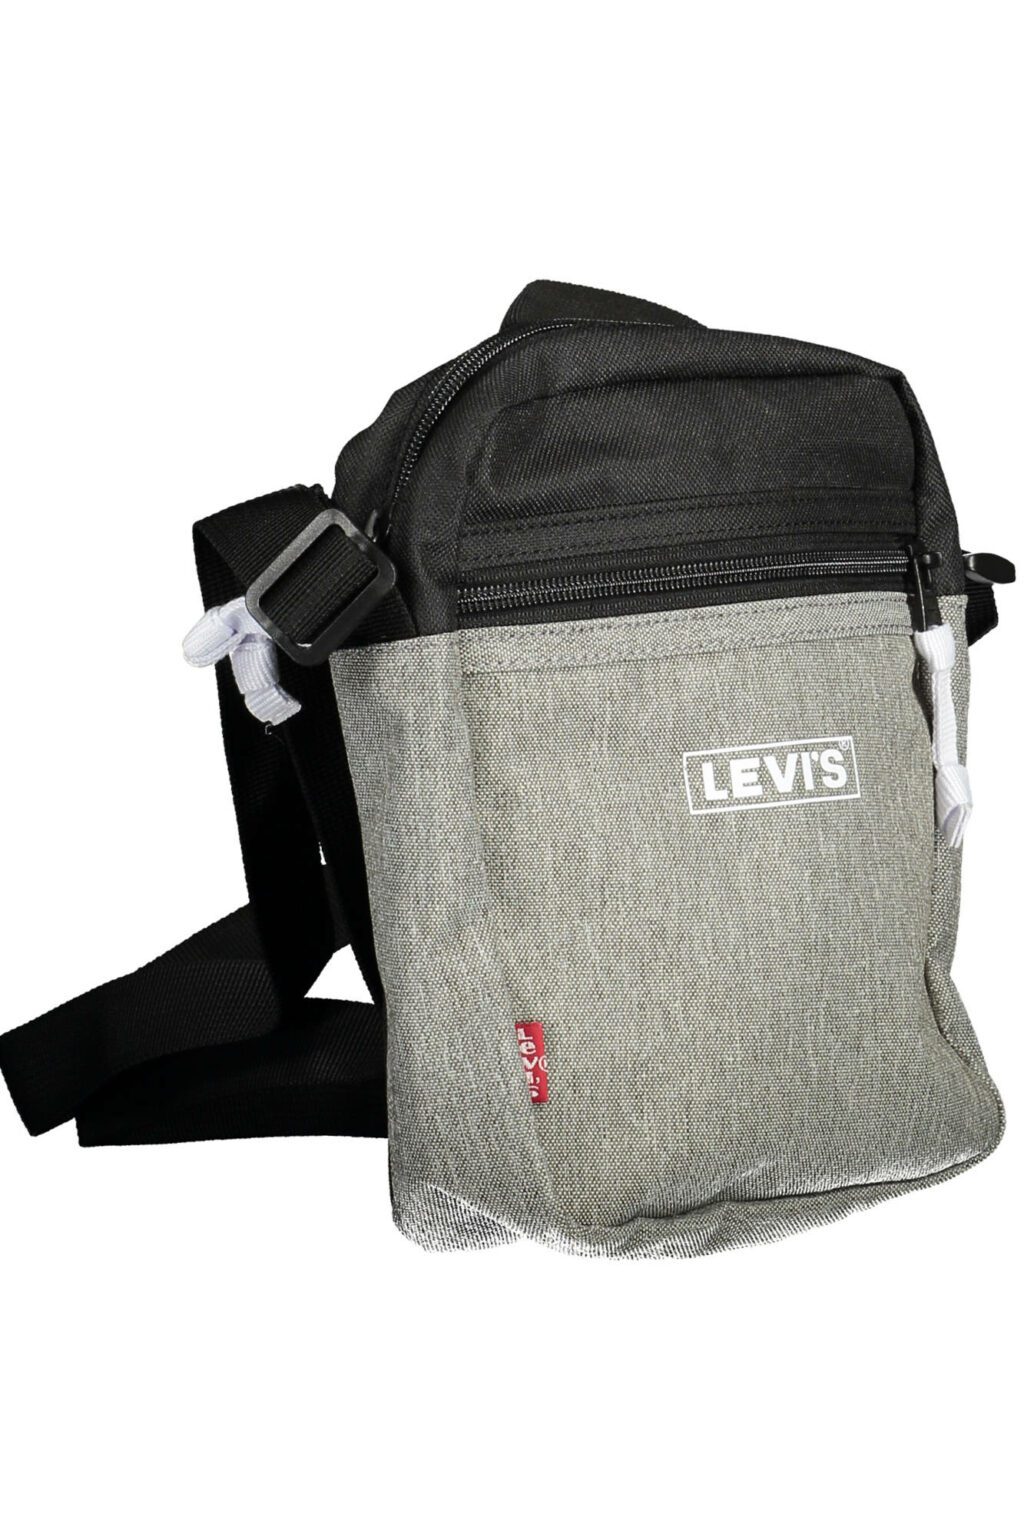 LEVI'S GRAY MAN SHOULDER BAG 232481-0109_GRIGIO_0059